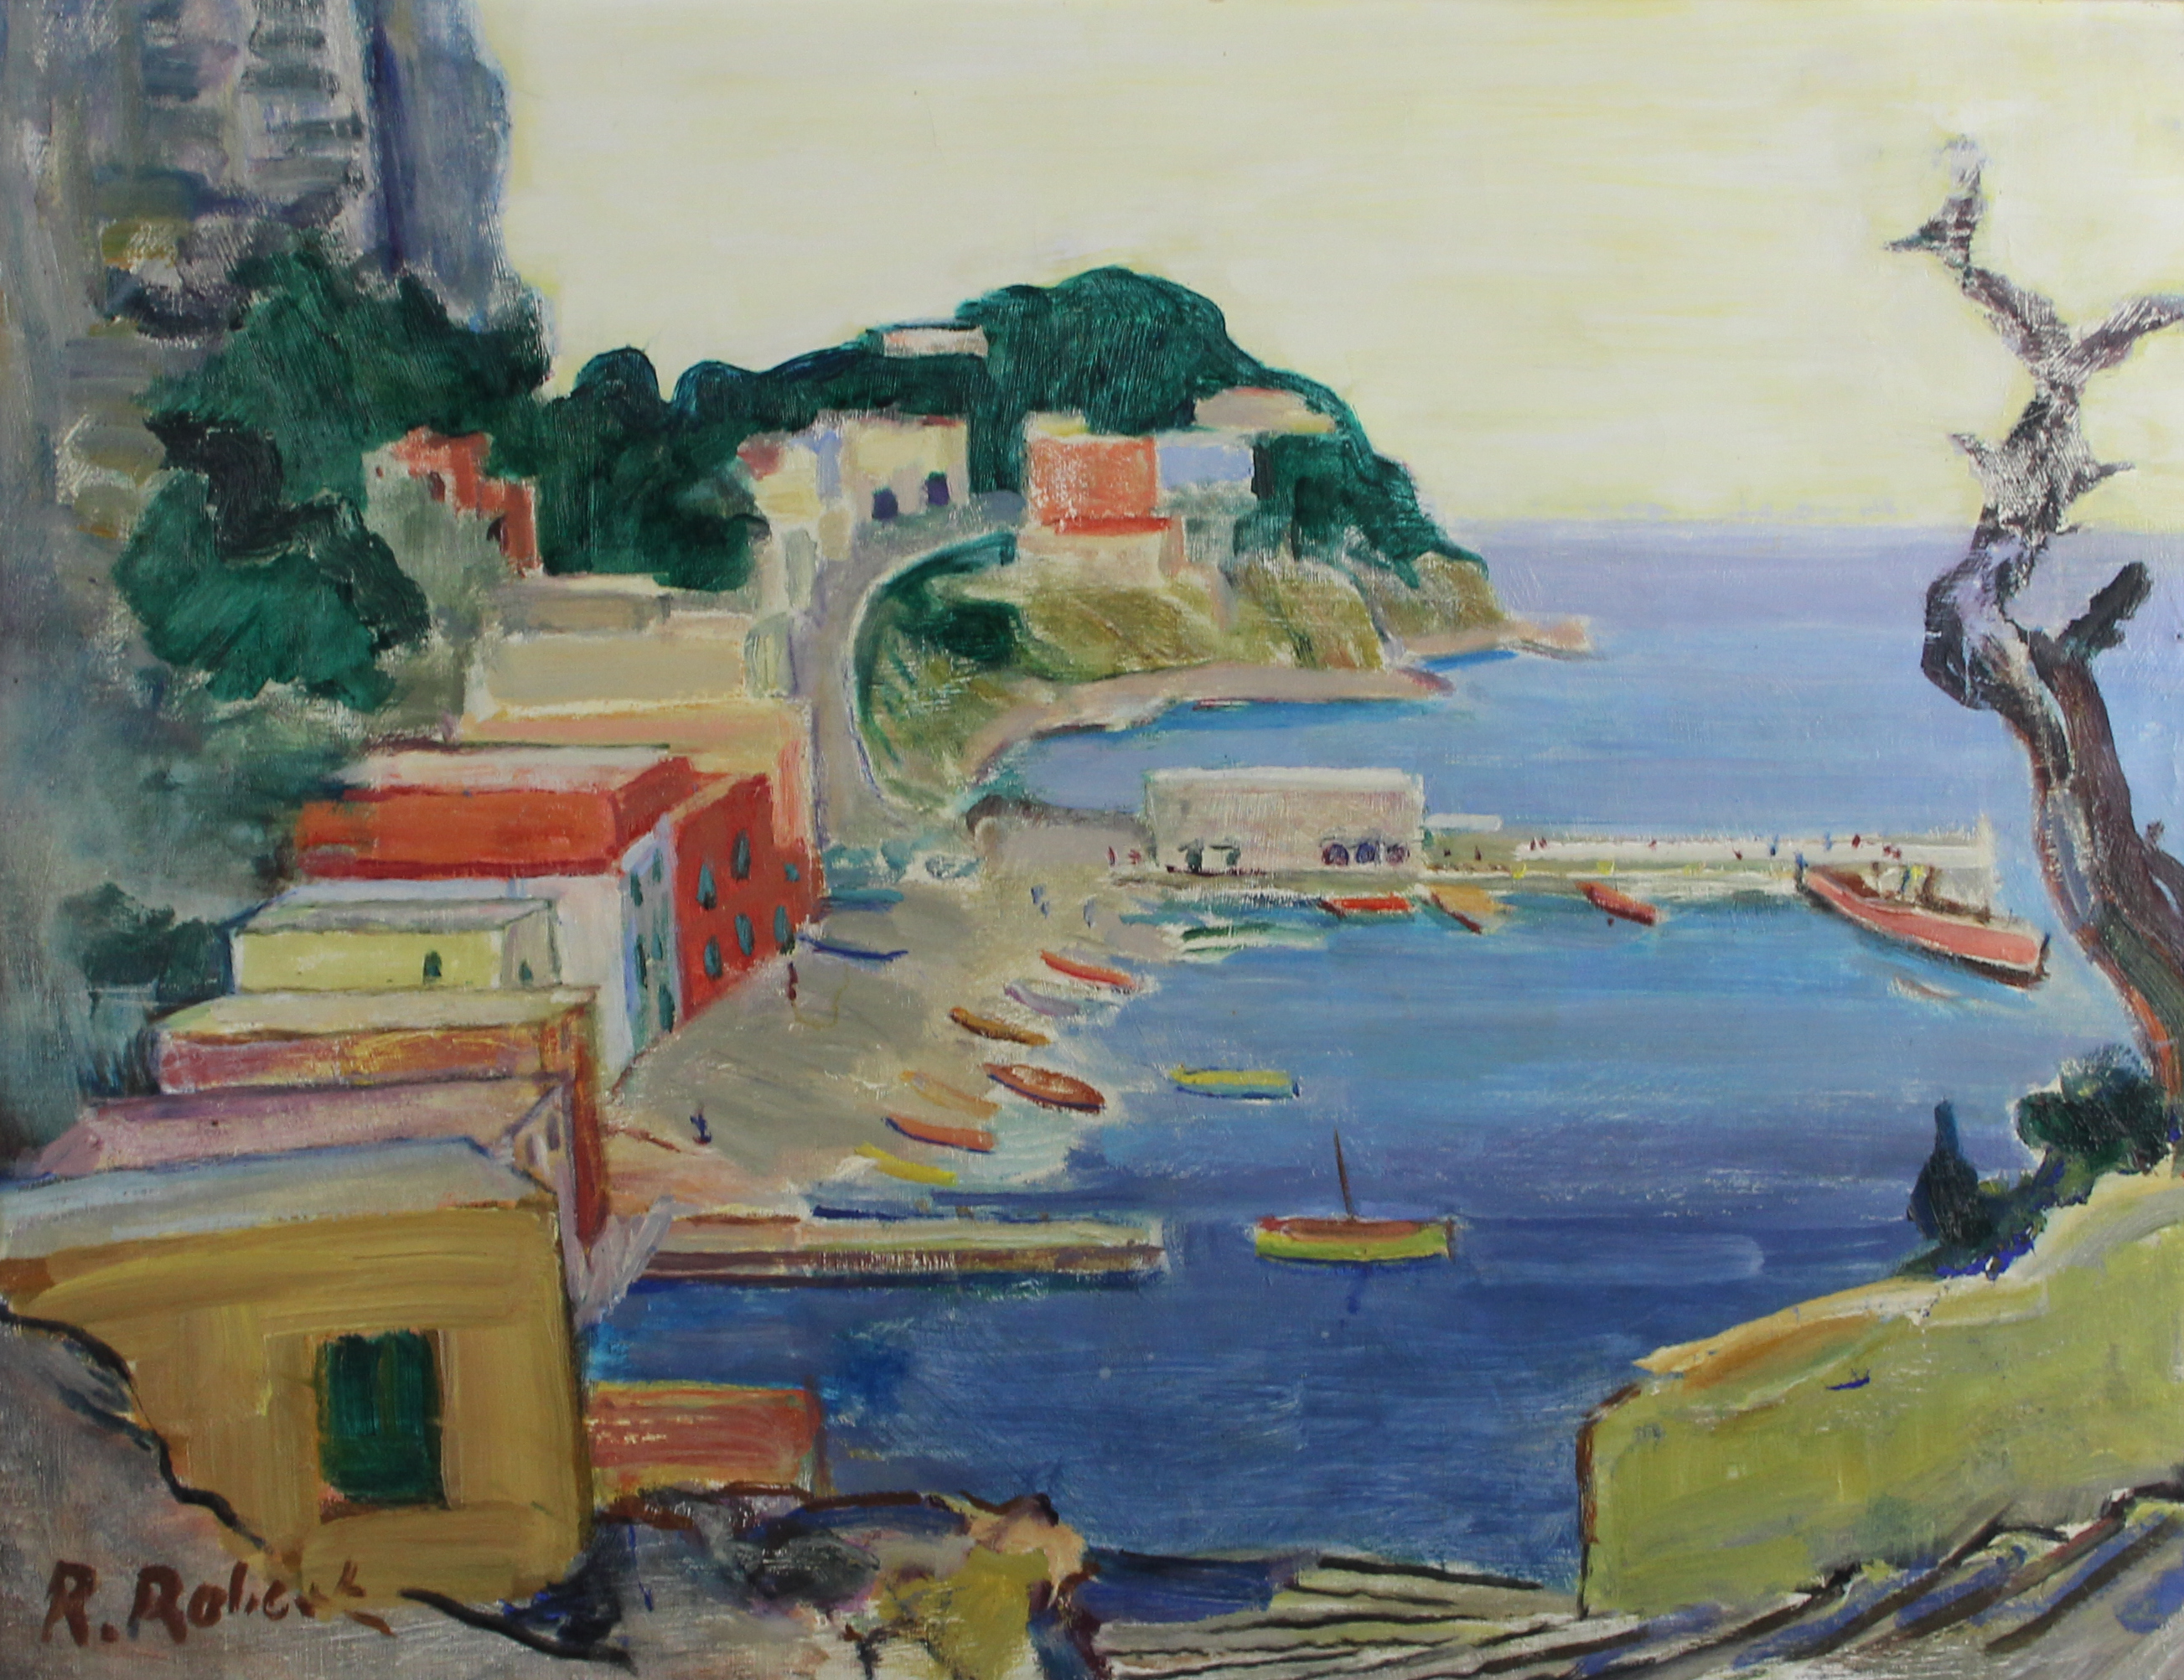 tableau Vue de méditerranée (Cassis?) Robert R marine,ville  huile toile 2ième moitié 20e siècle